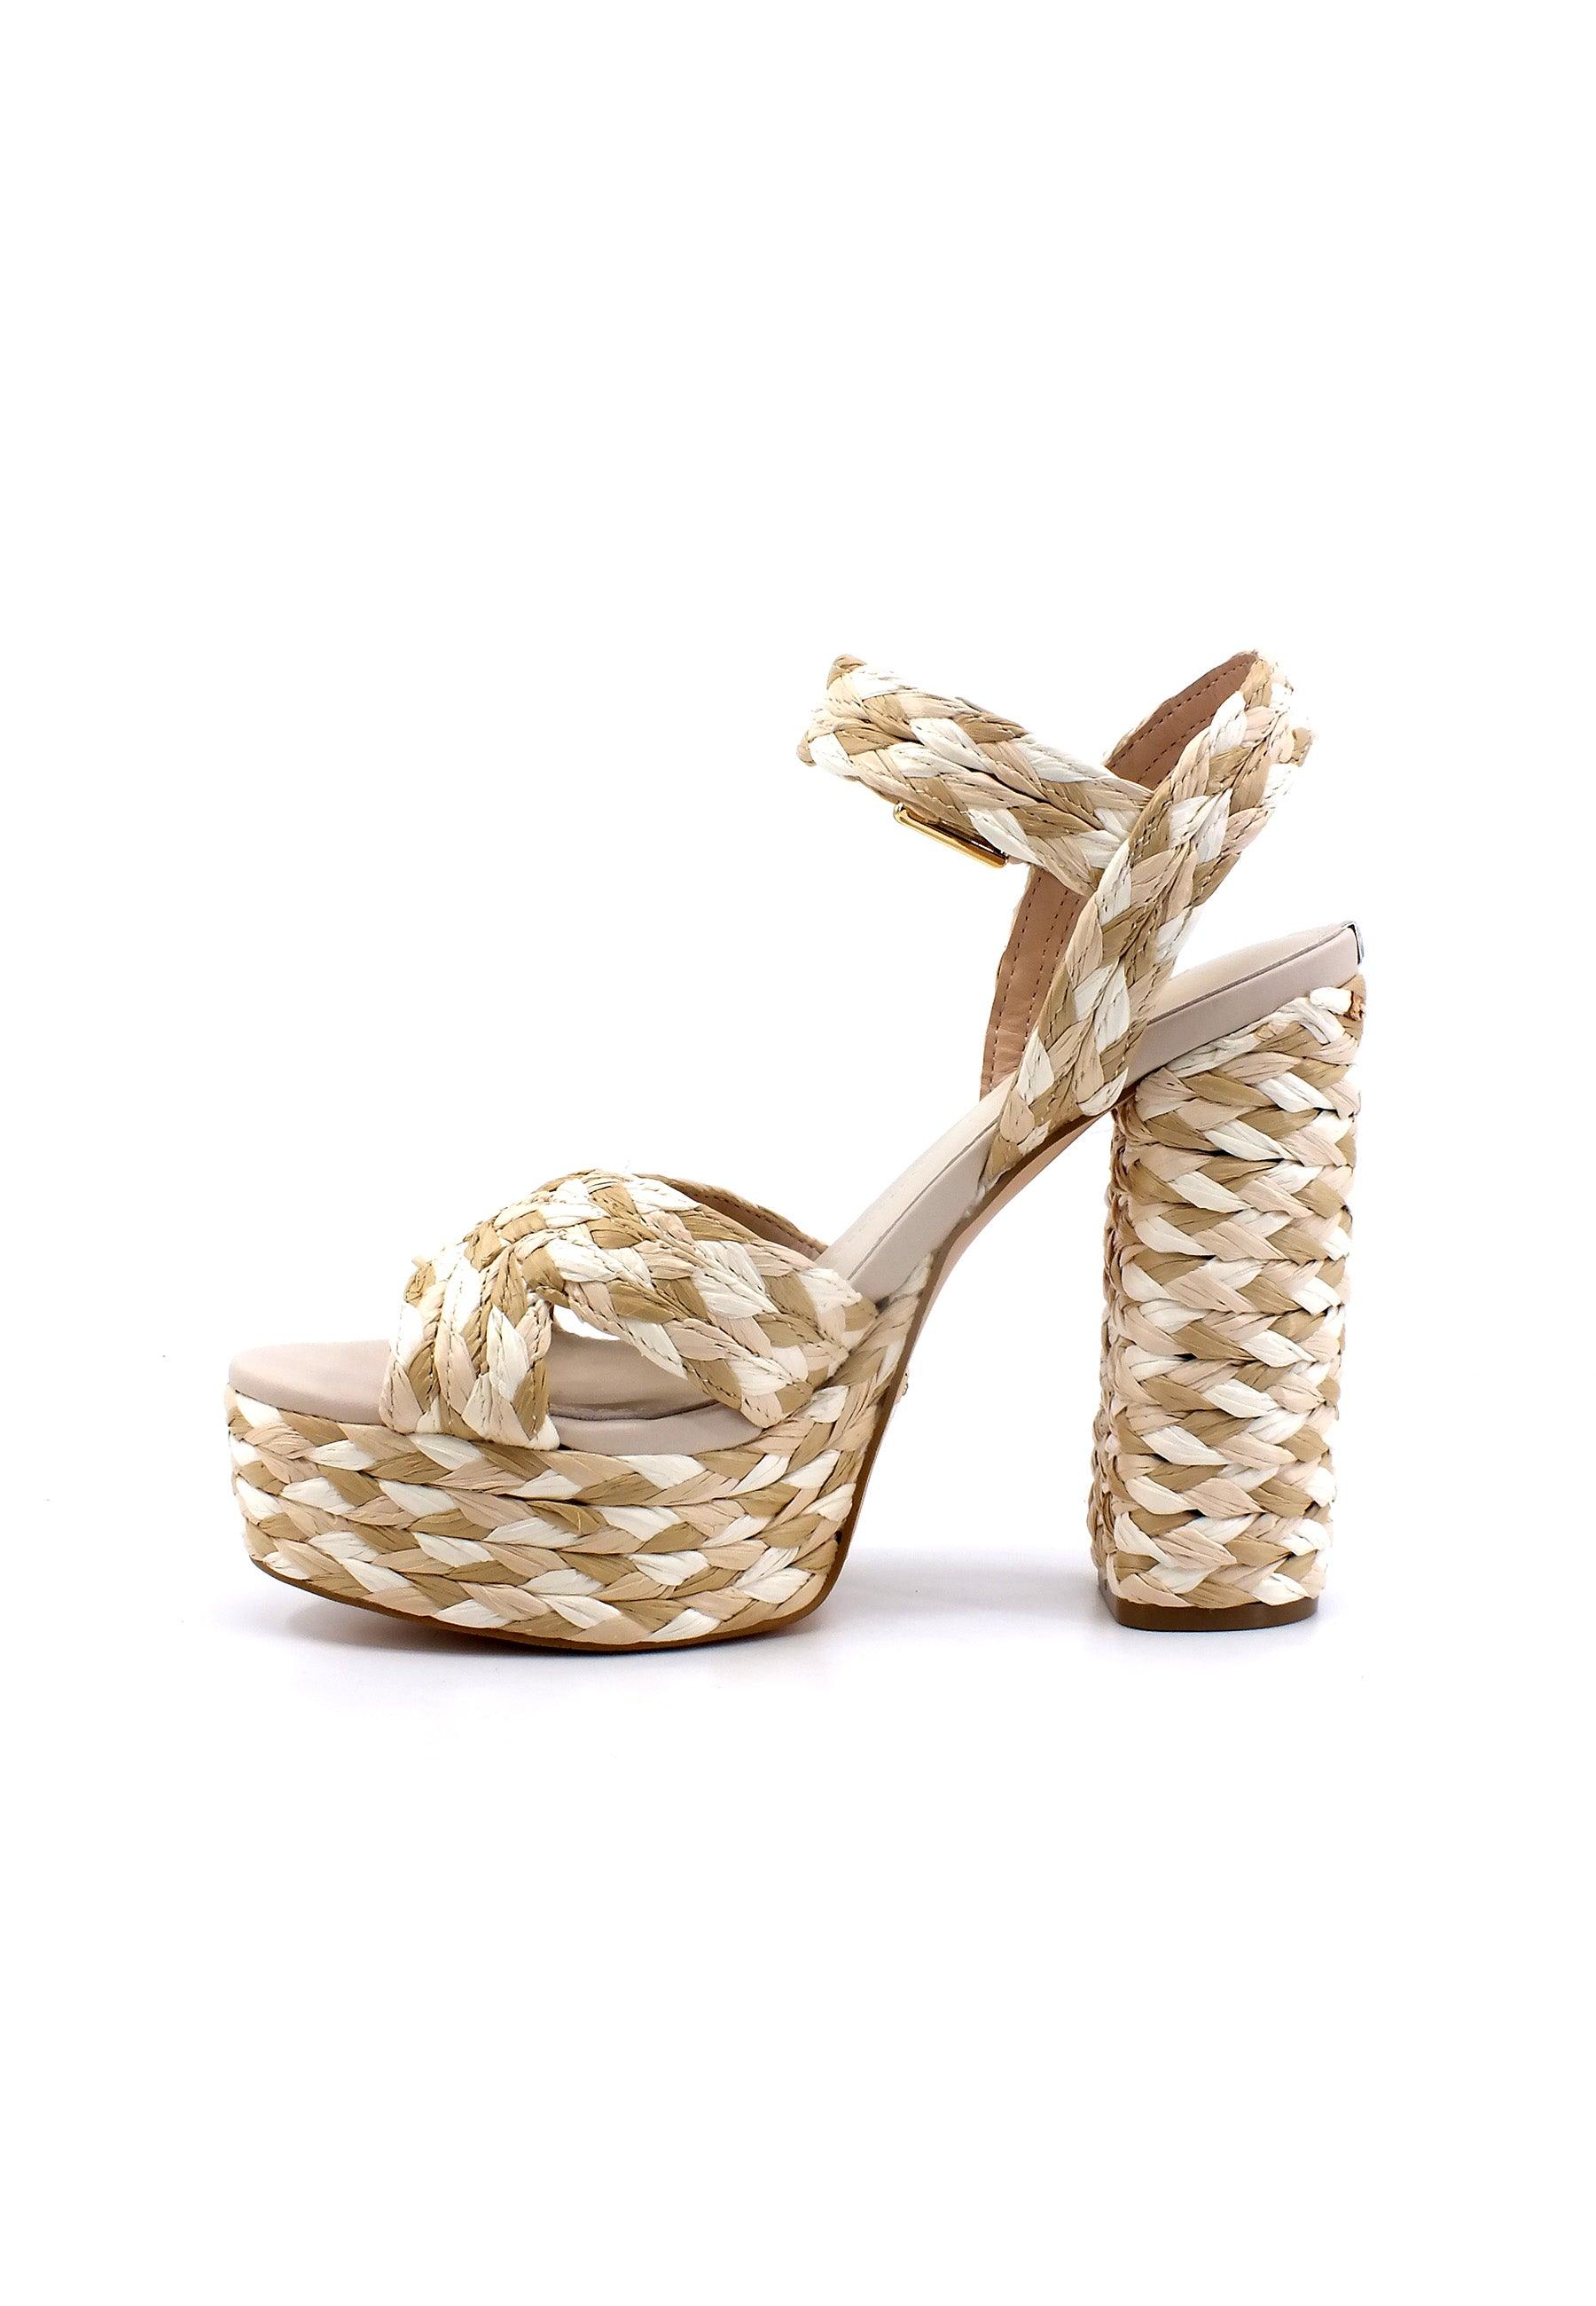 GUESS Sandalo Tacco Alto Intreccio Donna Tan FL6GBNELE03 - Sandrini Calzature e Abbigliamento